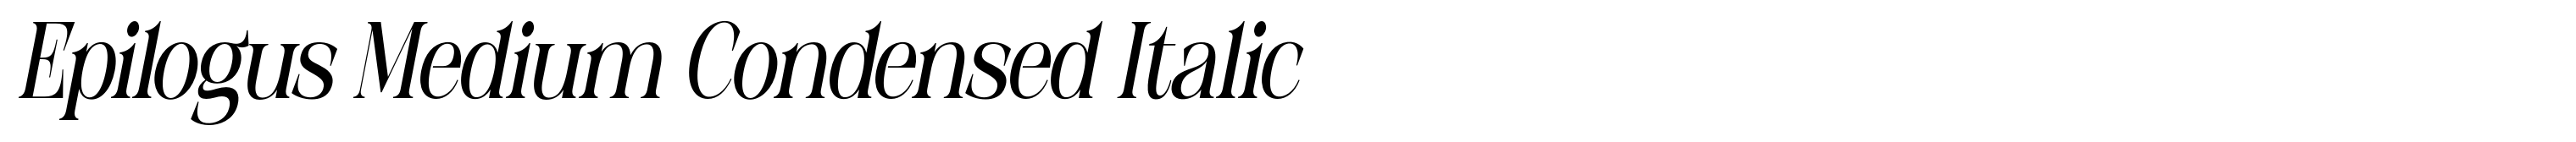 Epilogus Medium Condensed Italic